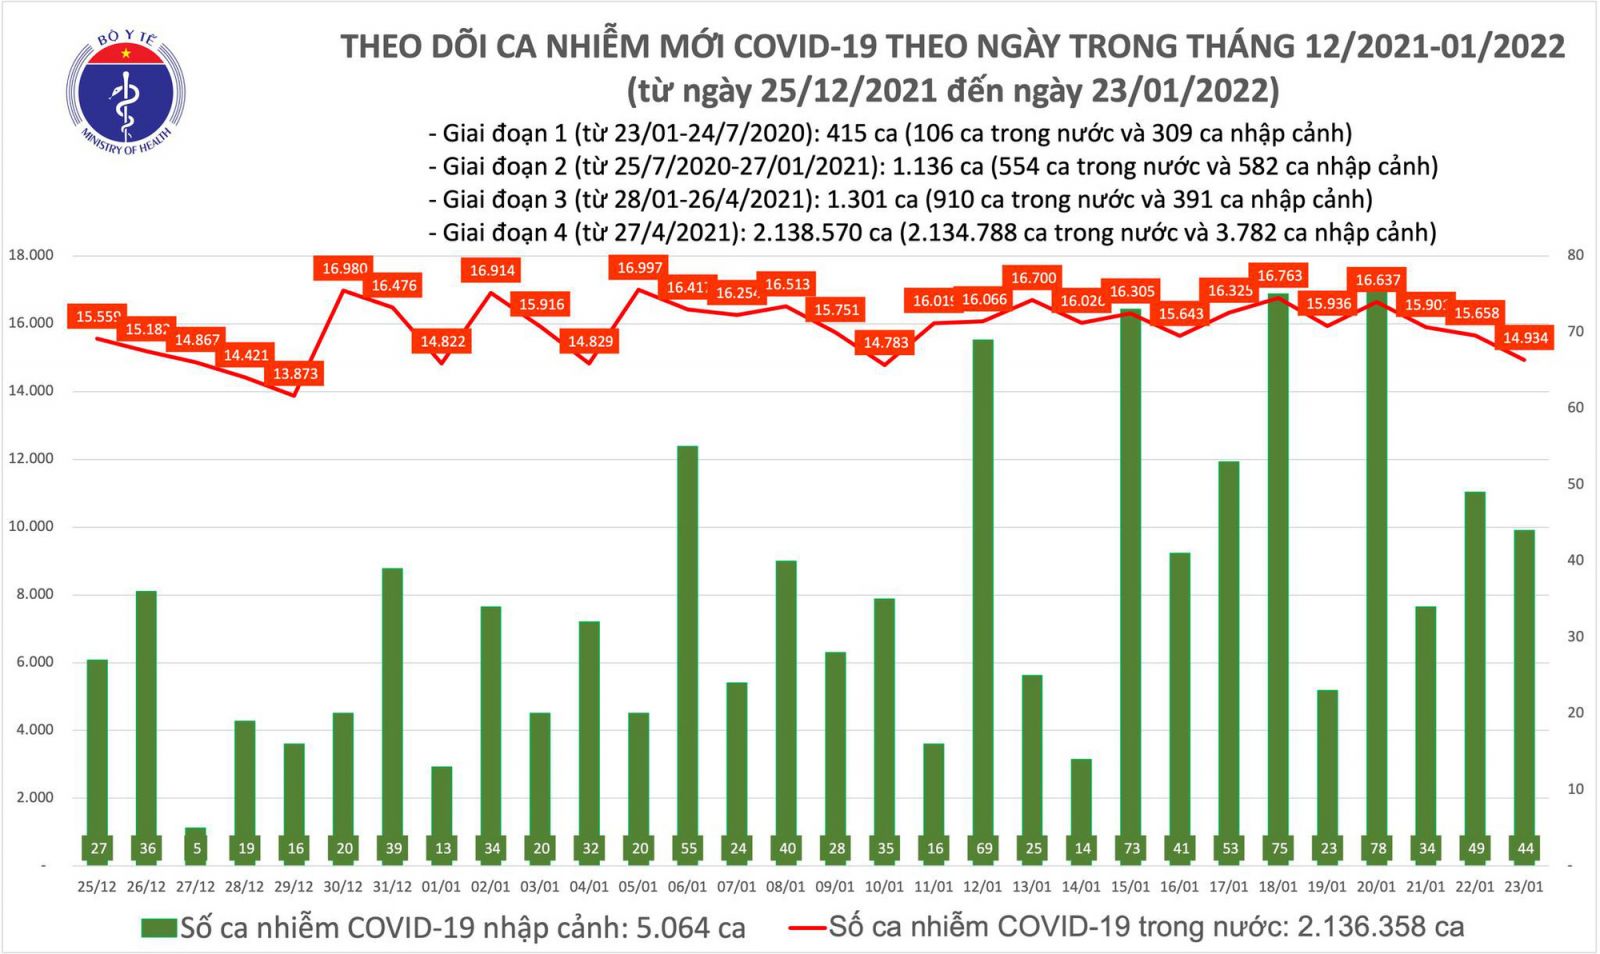 Ngày 23/1: Có 14.978 ca mắc COVID-19, số tử vong giảm mạnh còn 123 ca